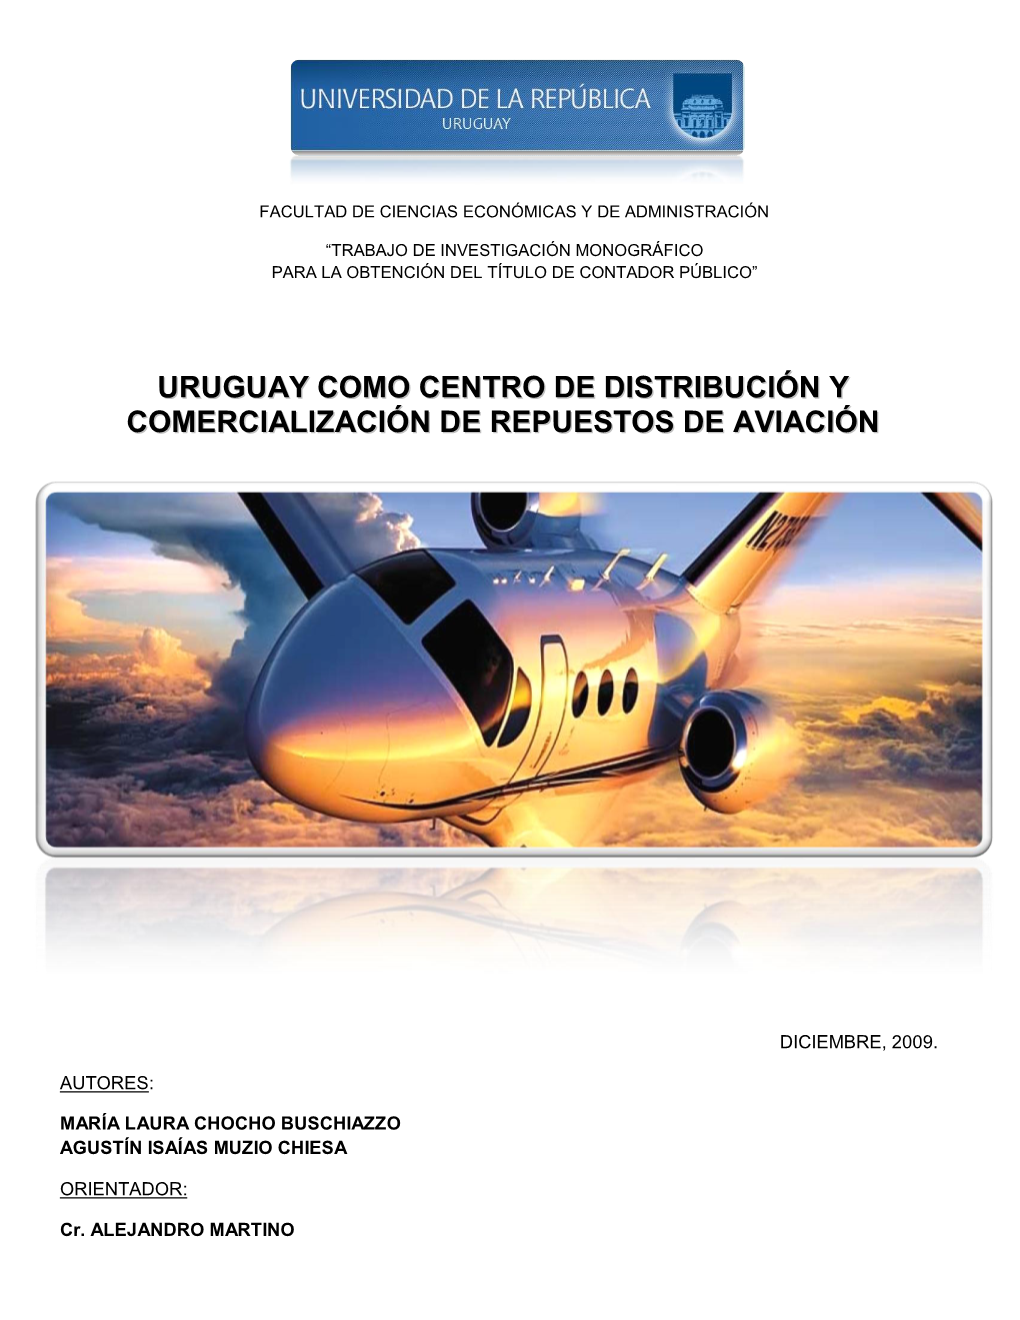 Uruguay Como Centro De Distribución Y Comercialización De Repuestos De Aviación